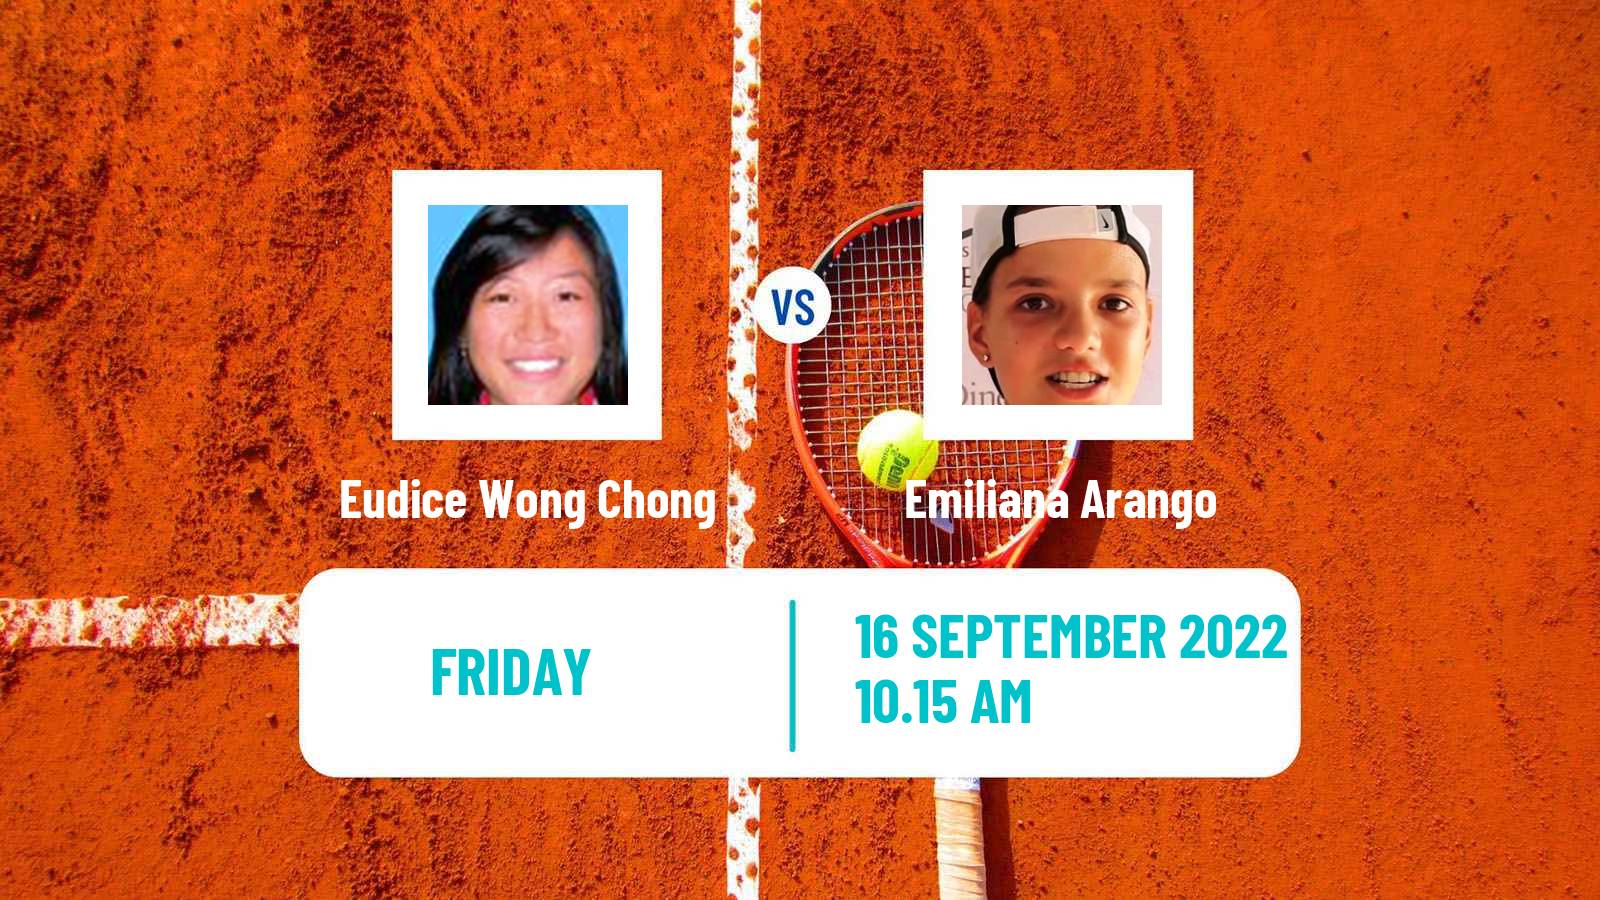 Tennis ITF Tournaments Eudice Wong Chong - Emiliana Arango